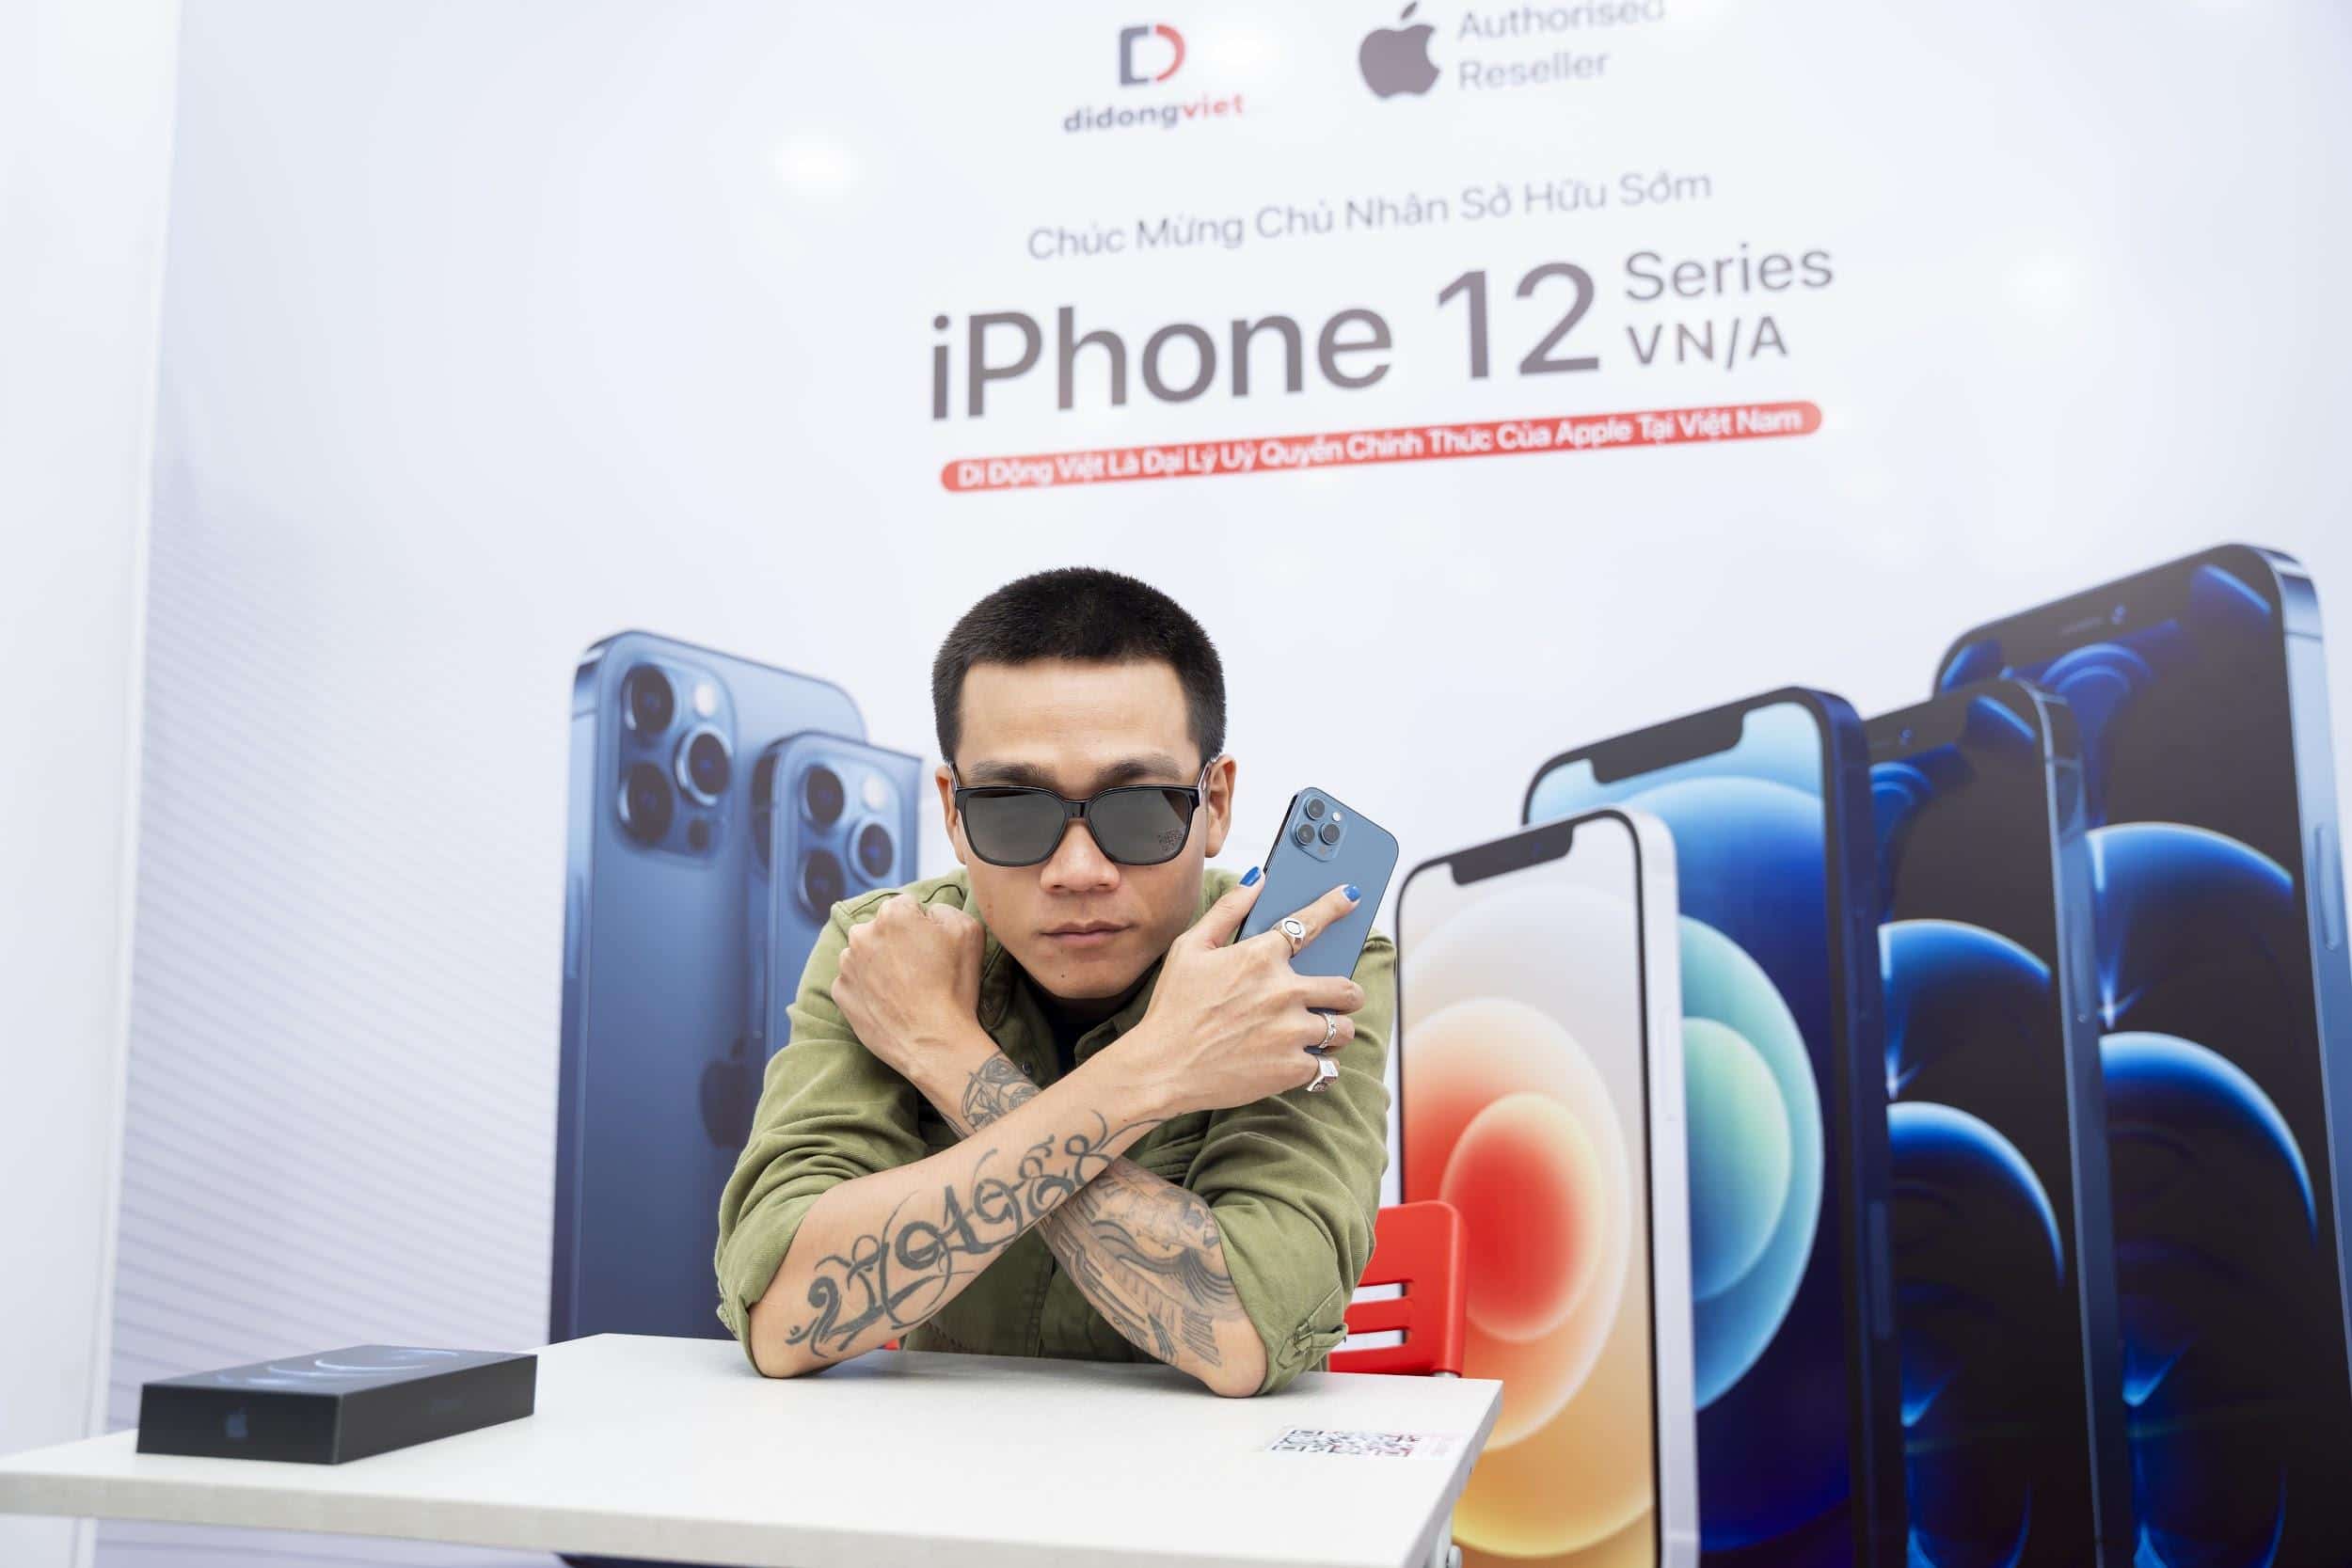 Wowy sở hữu iPhone 12 Pro Max VN/A đầu tiên tại Việt Nam